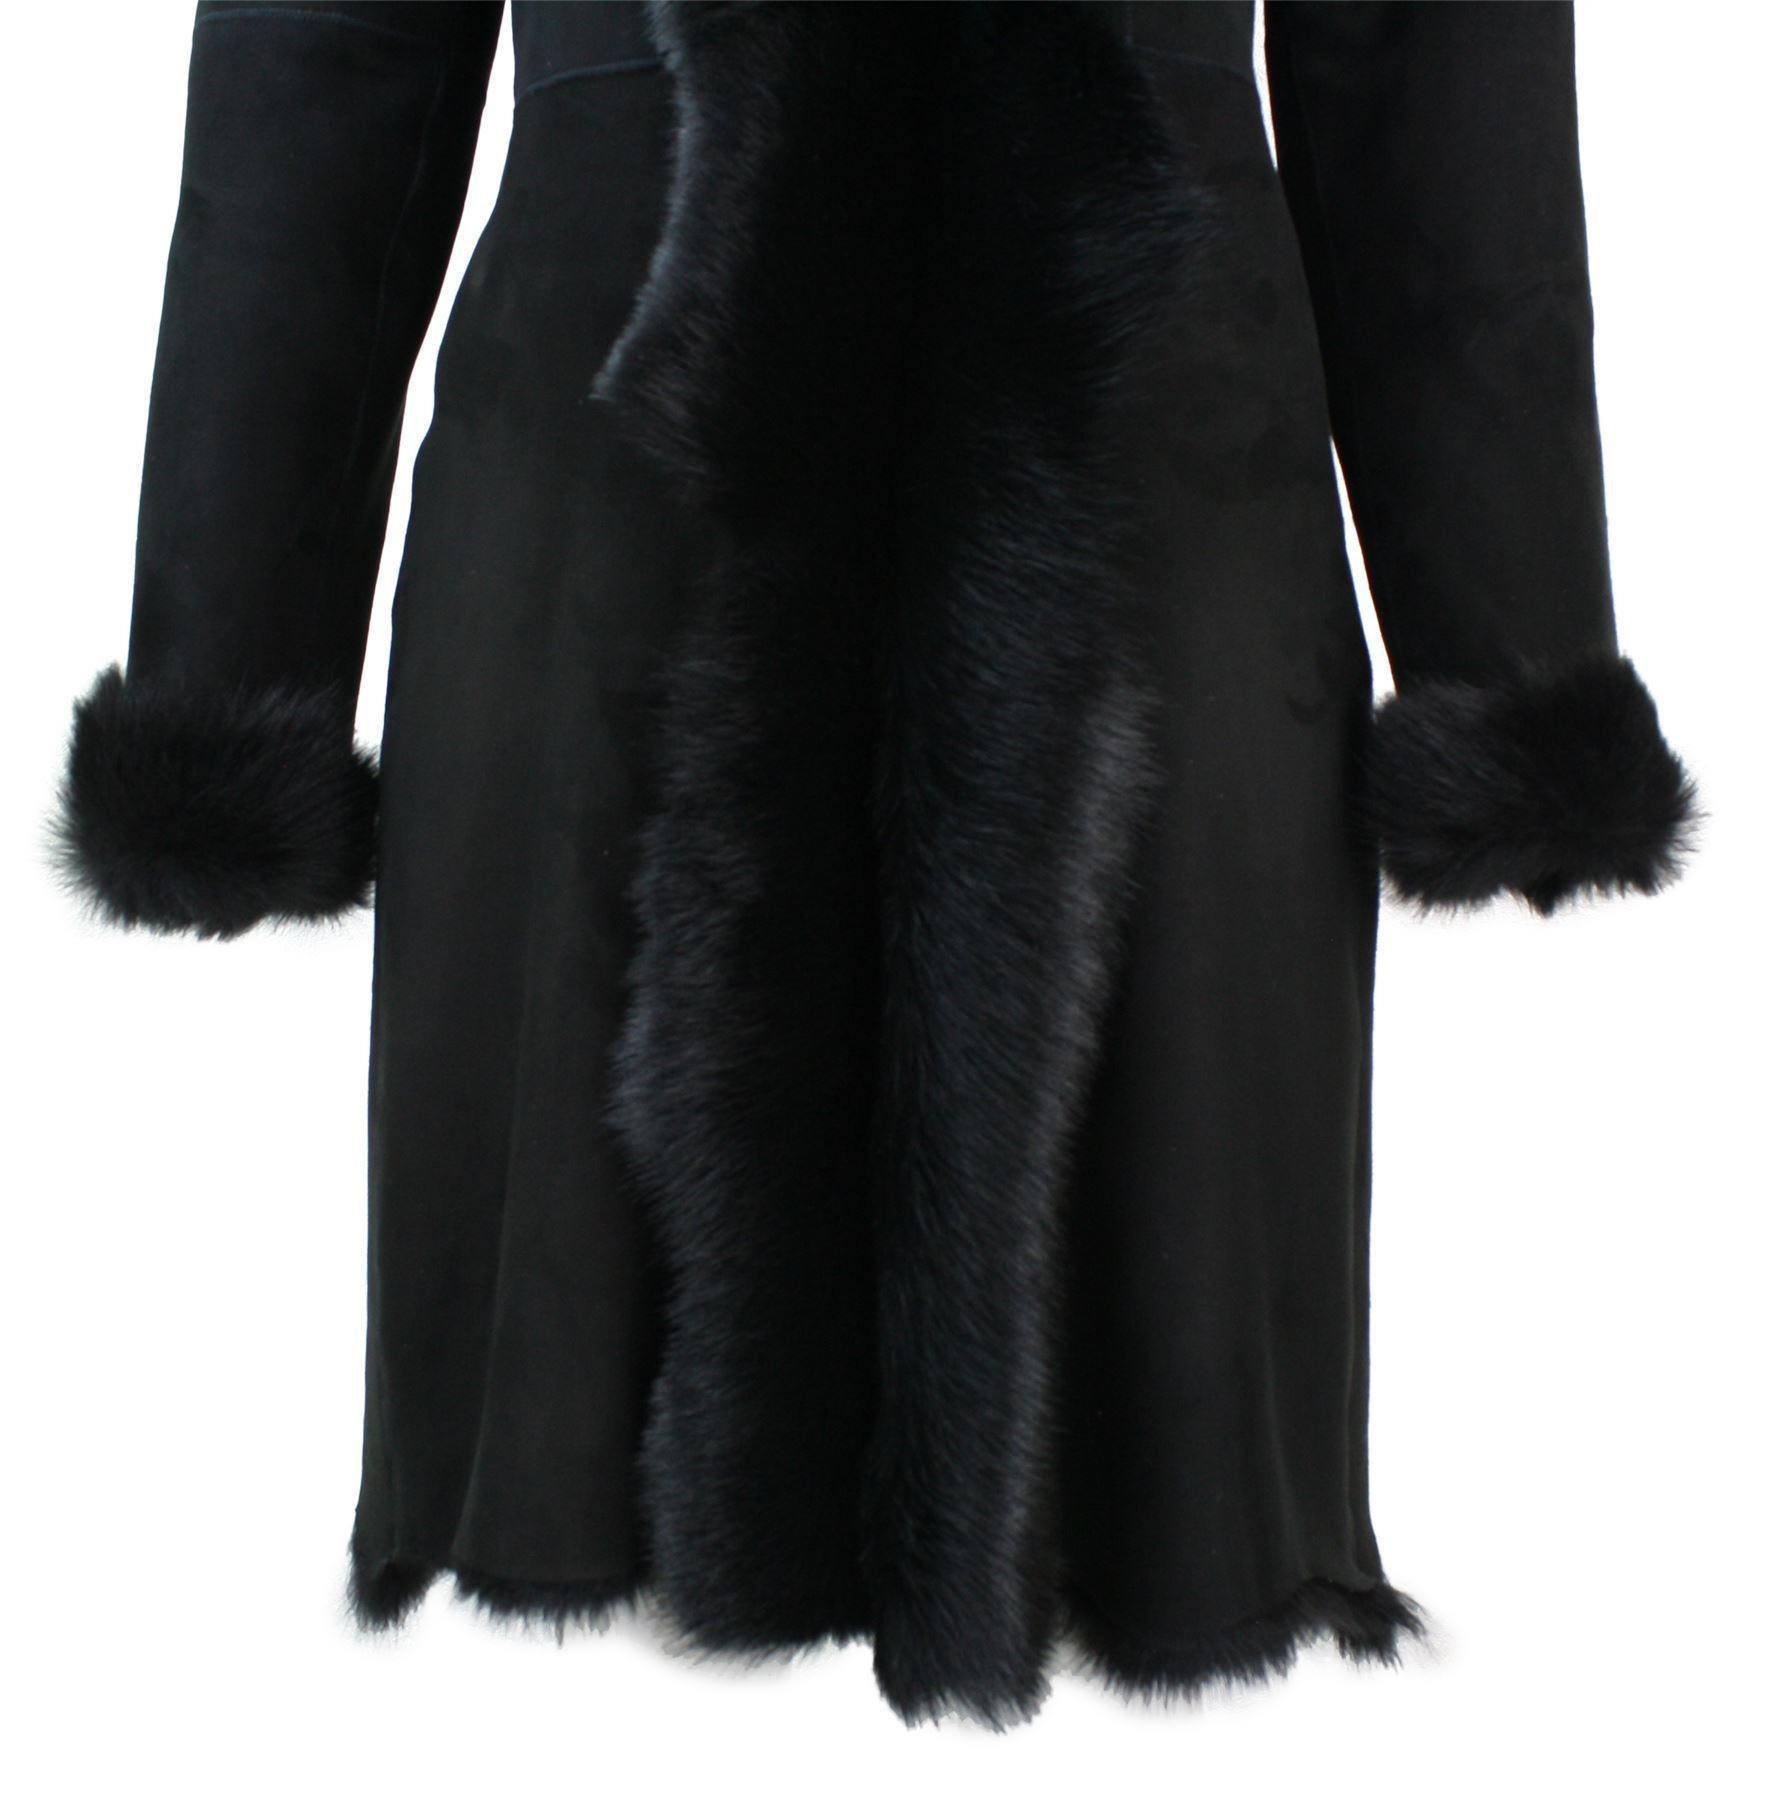 Laides Black Suede 3/4 Spanish Toscana Fur Sheepskin Leather - Etsy UK